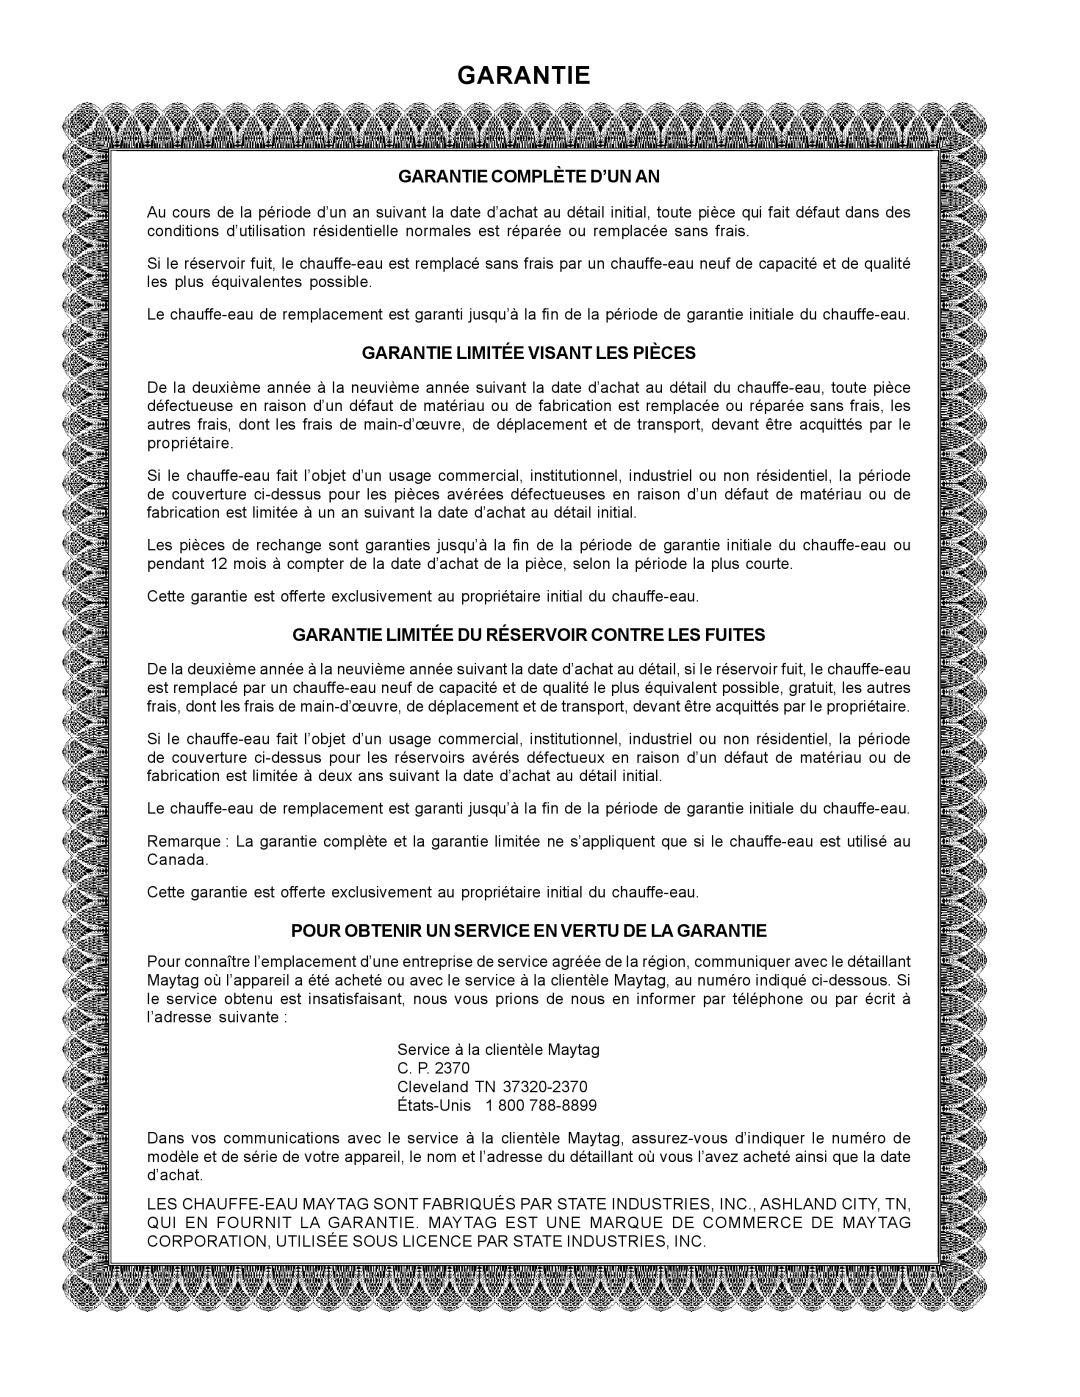 Maytag HXN4975S manual Garantie Complète D’Un An, Garantie Limitée Visant Les Pièces 